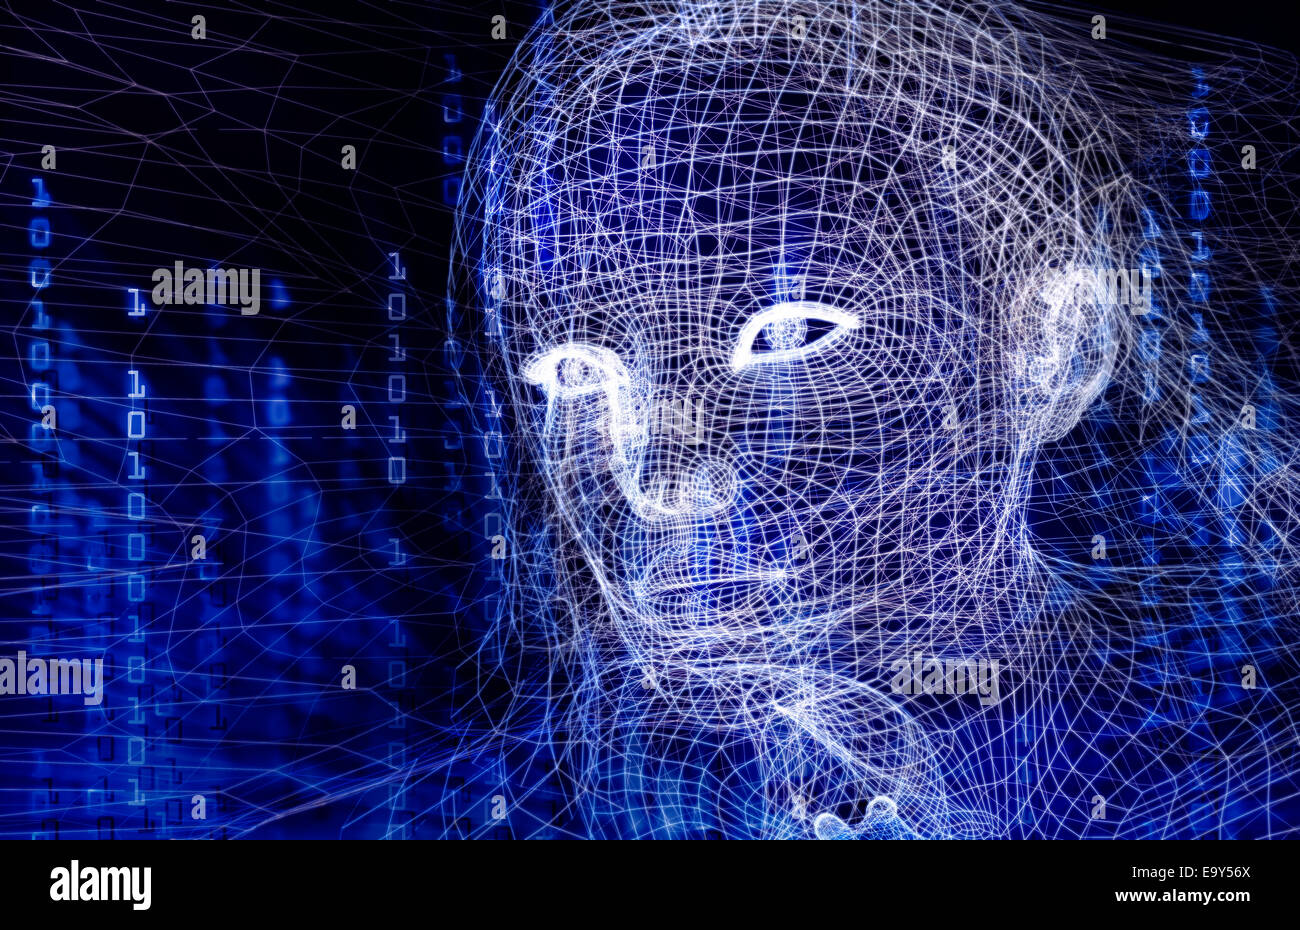 Licencia disponible en MaximImages.com - Ilustración 3D conceptual de cara humana de realidad virtual digital de mujer con código binario AI sobre fondo azul Foto de stock